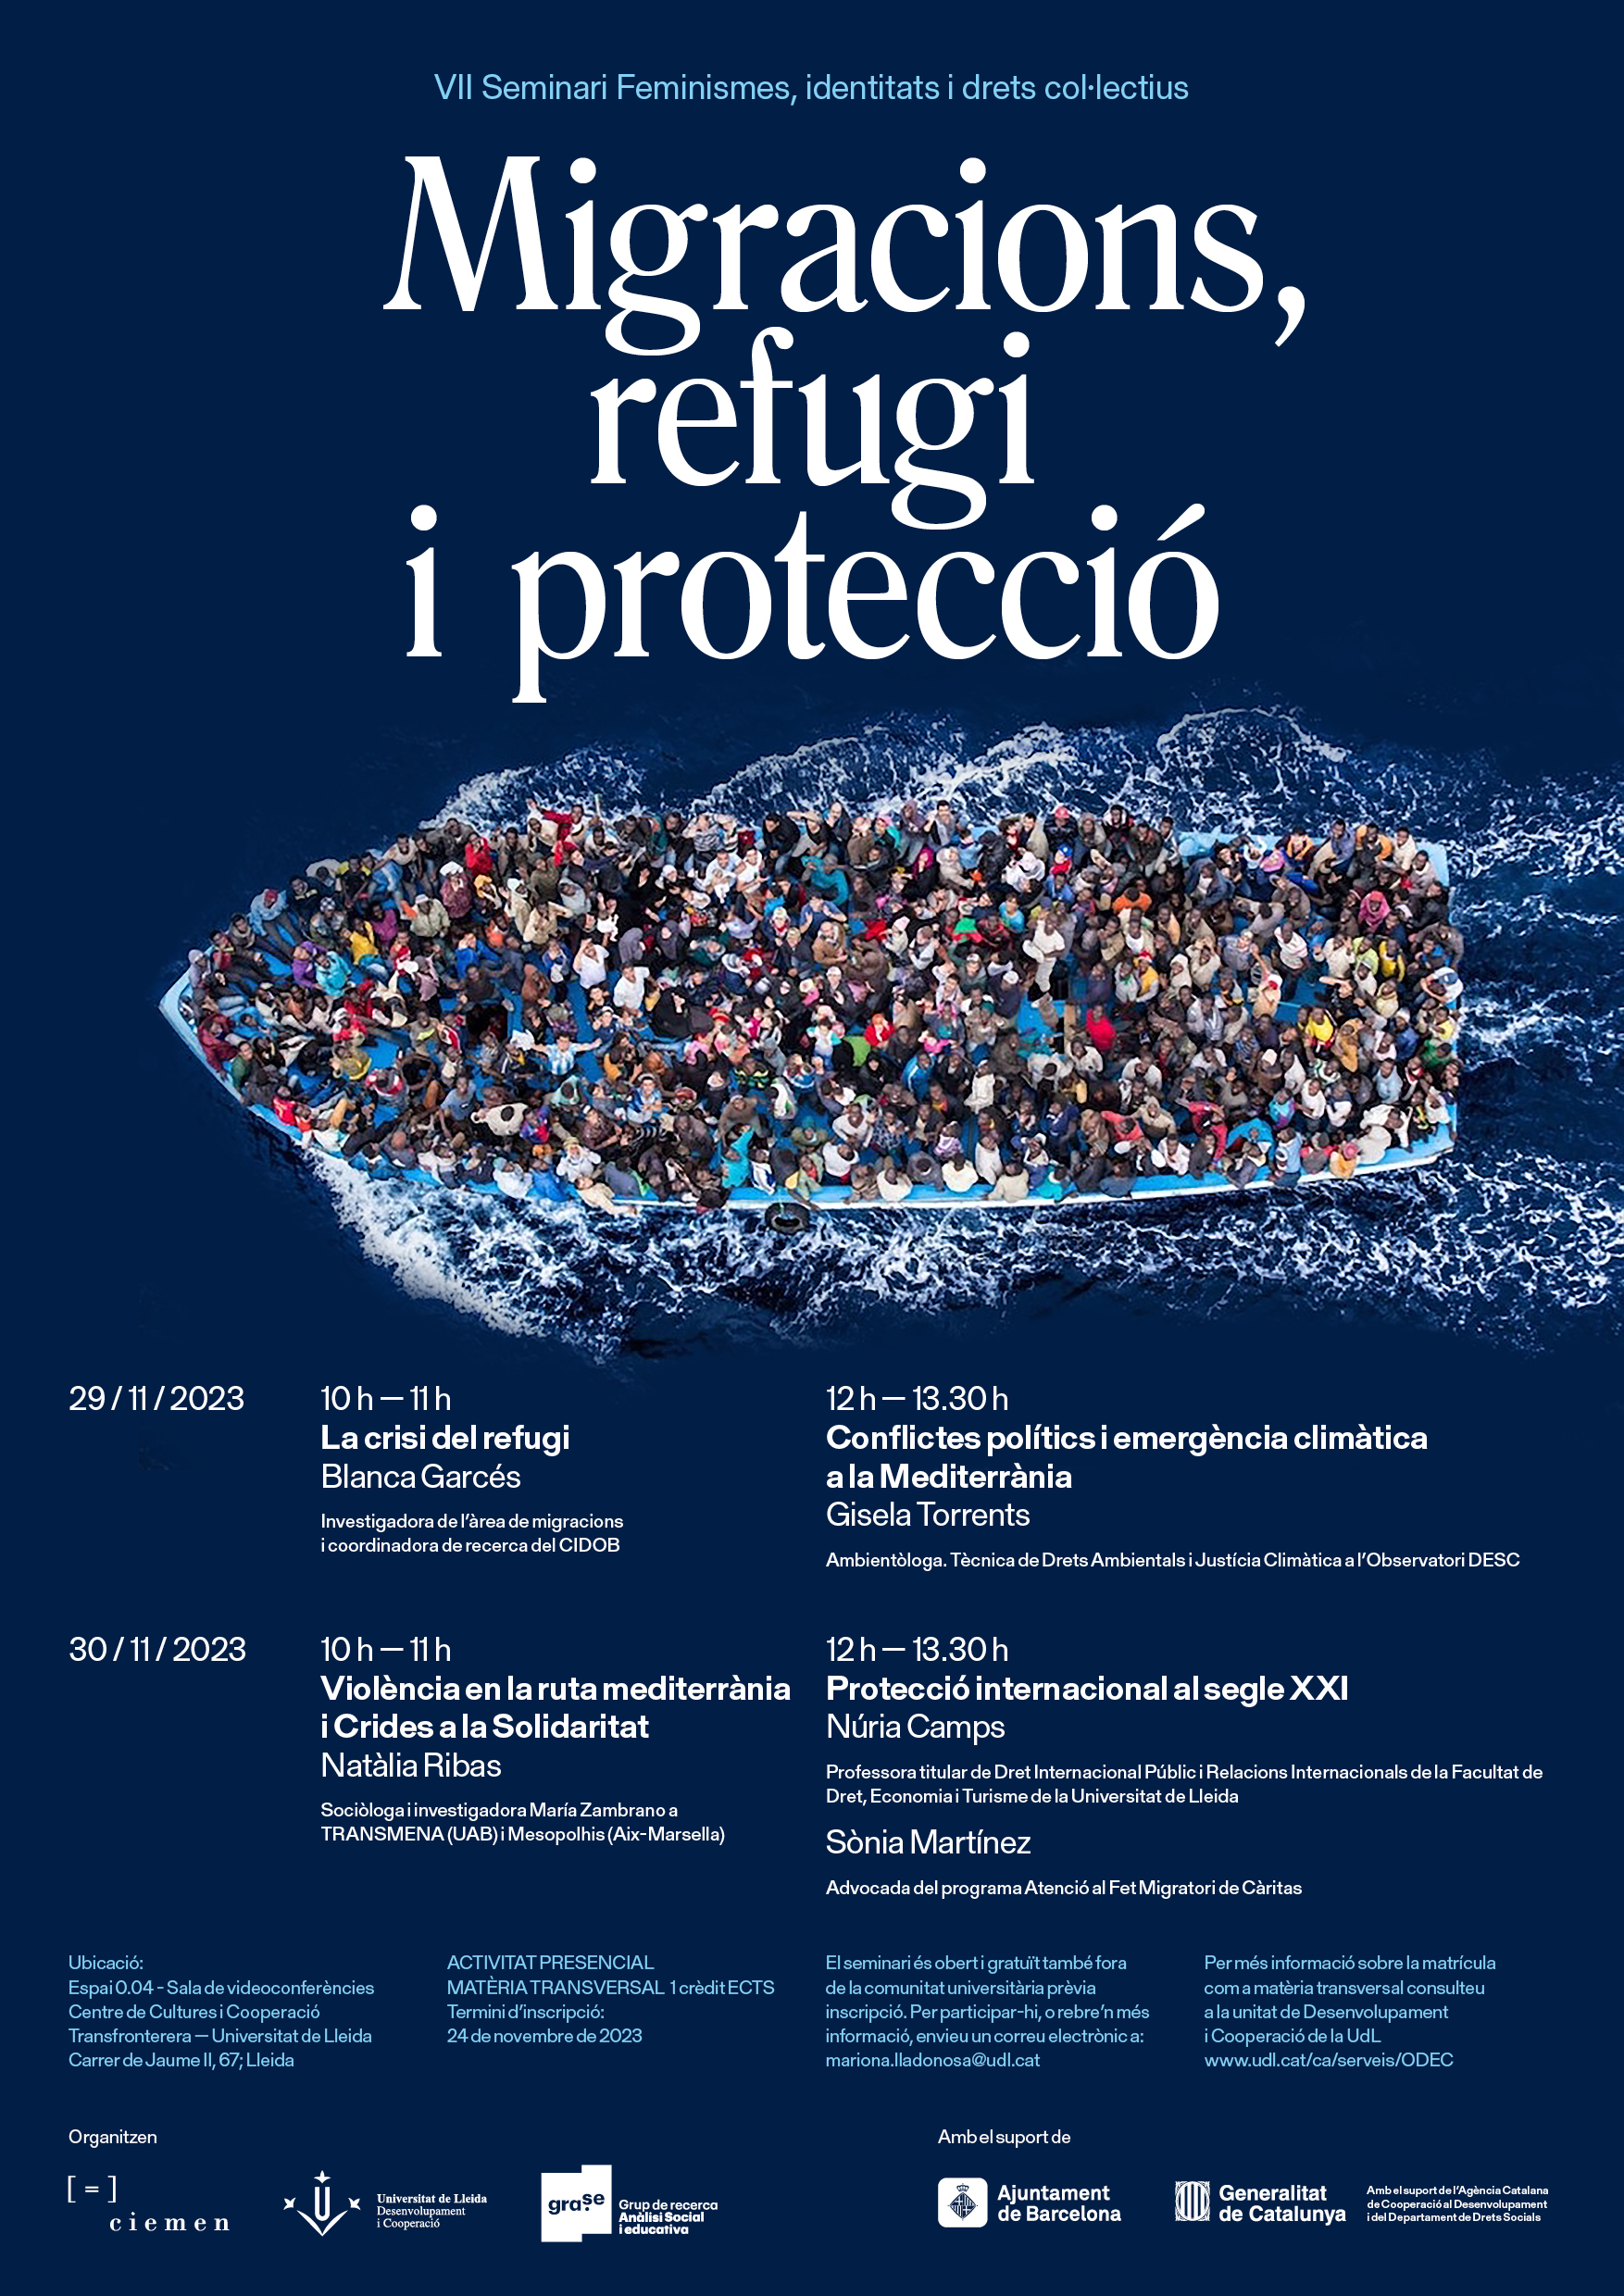 VII Seminari Feminismes, Identitats i Drets Col·lectius: Migracions, Refugi i Protecció.